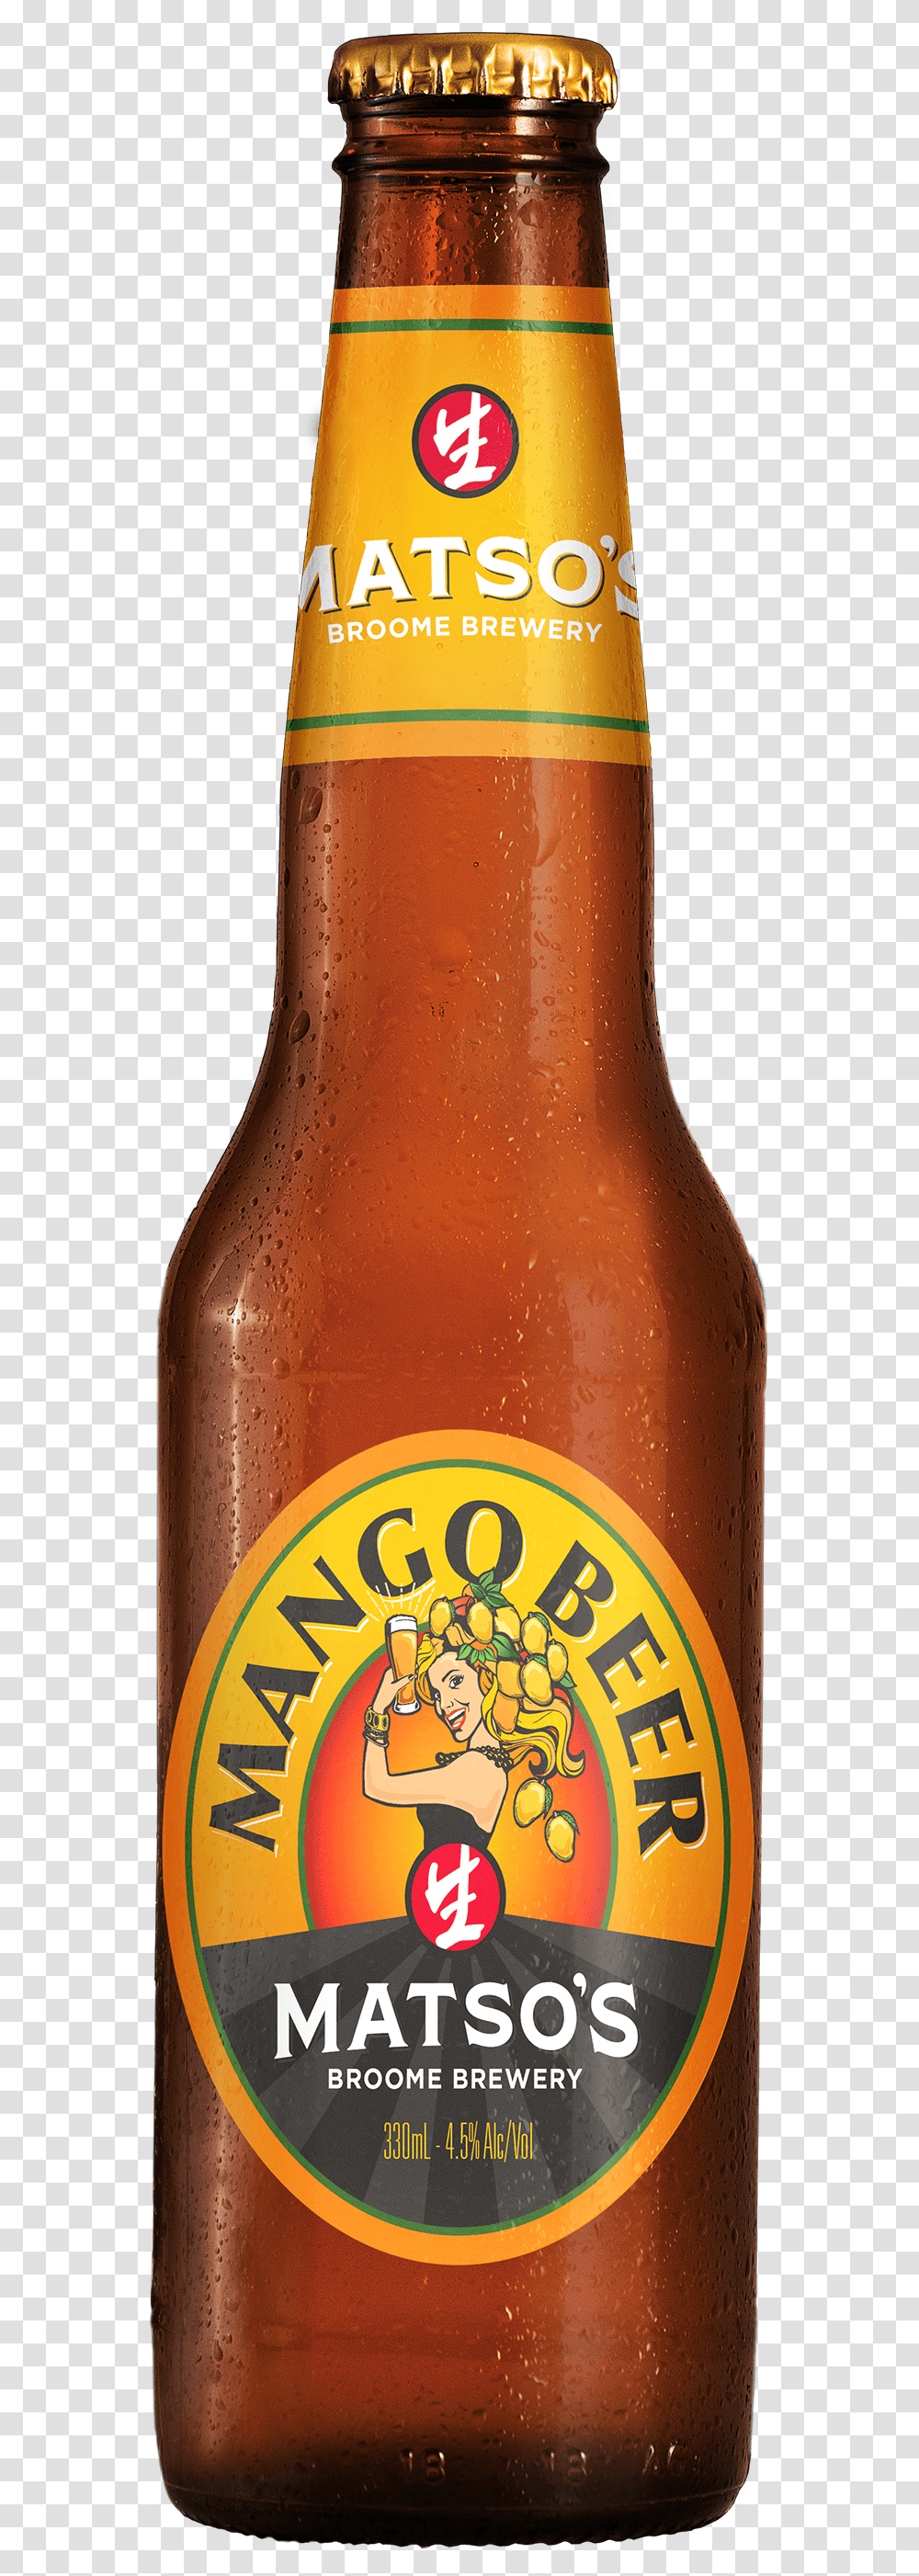 Mango Beer Beer Bottle, Alcohol, Beverage, Drink, Lager Transparent Png